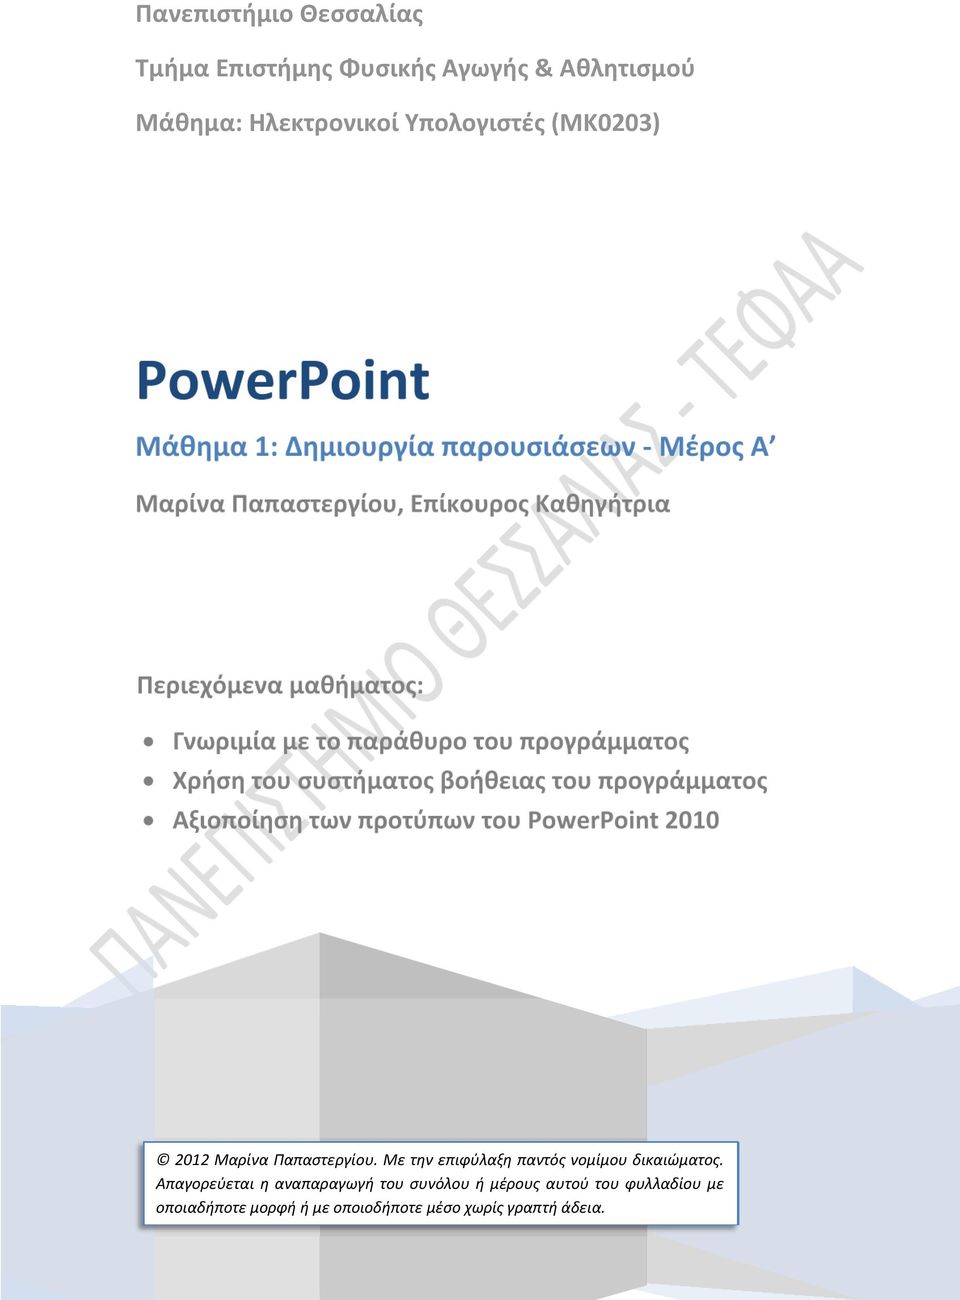 συστήματος βοήθειας του προγράμματος Αξιοποίηση των προτύπων του PowerPoint 2010 2012 Μαρίνα Παπαστεργίου.